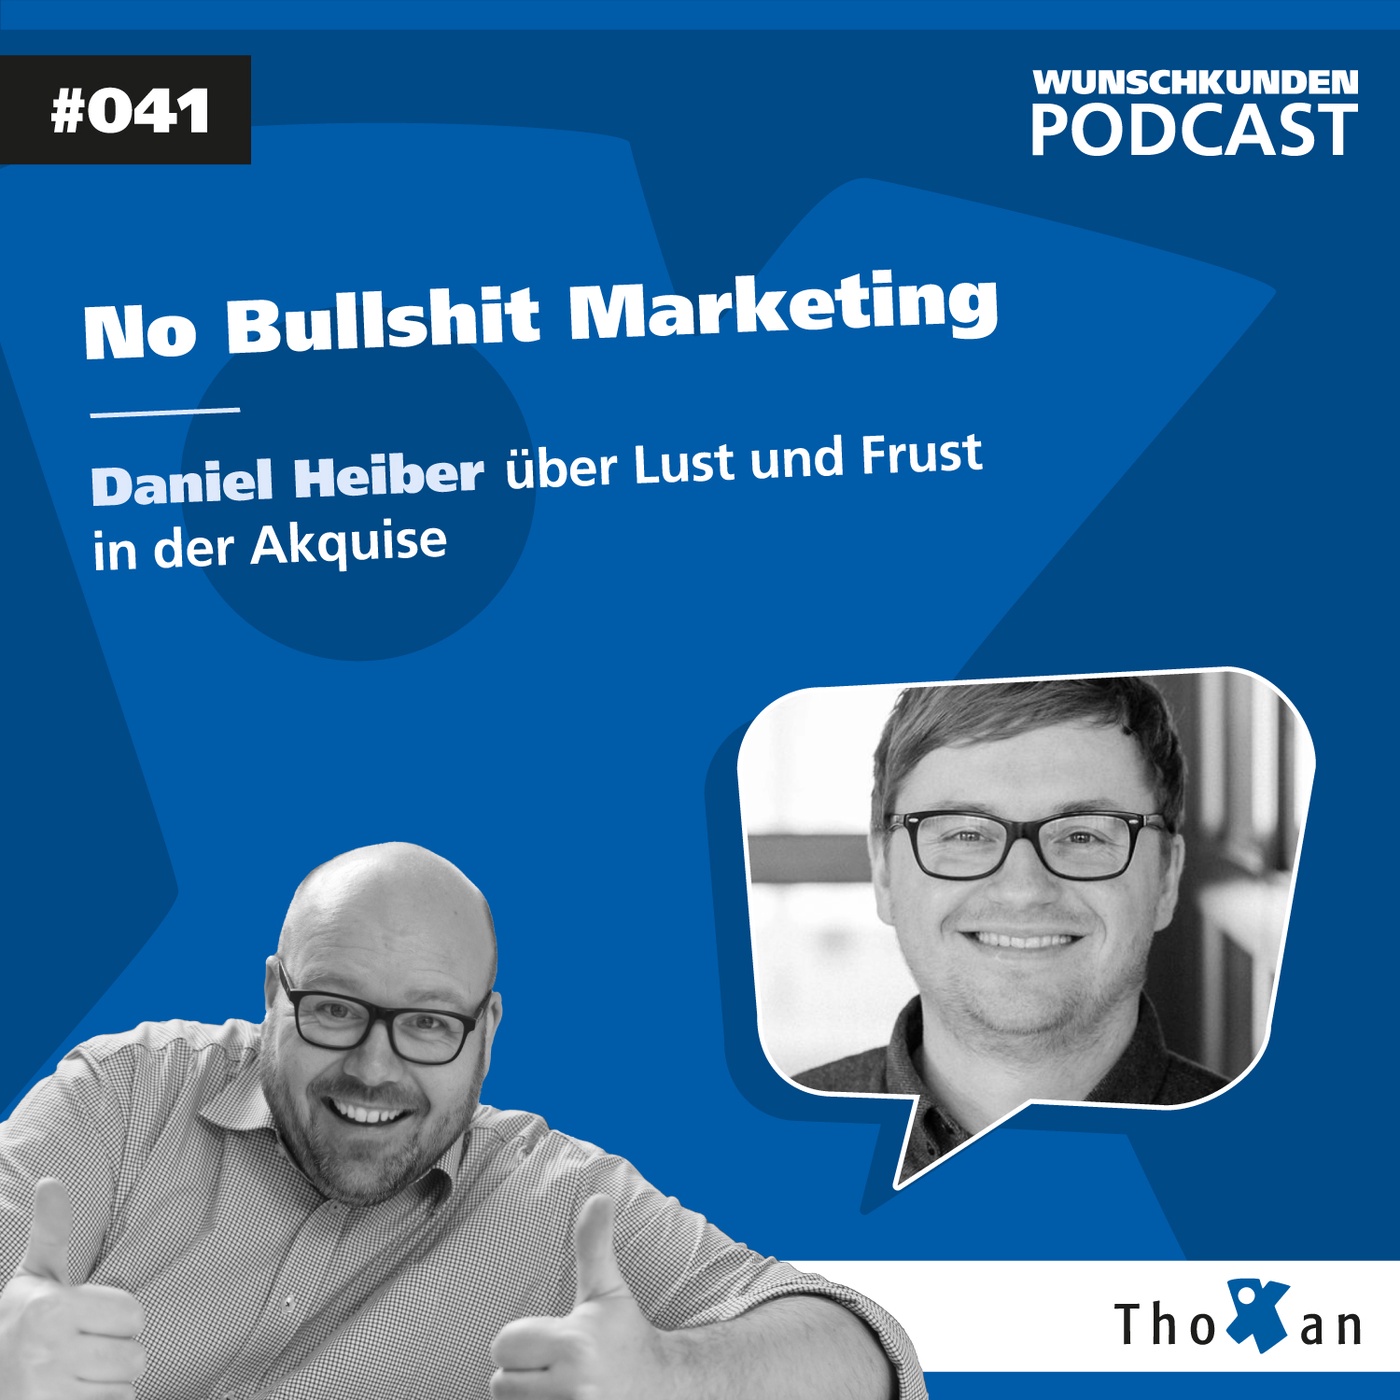 No Bullshit Marketing: Daniel Heiber über Lust und Frust in der Akquise